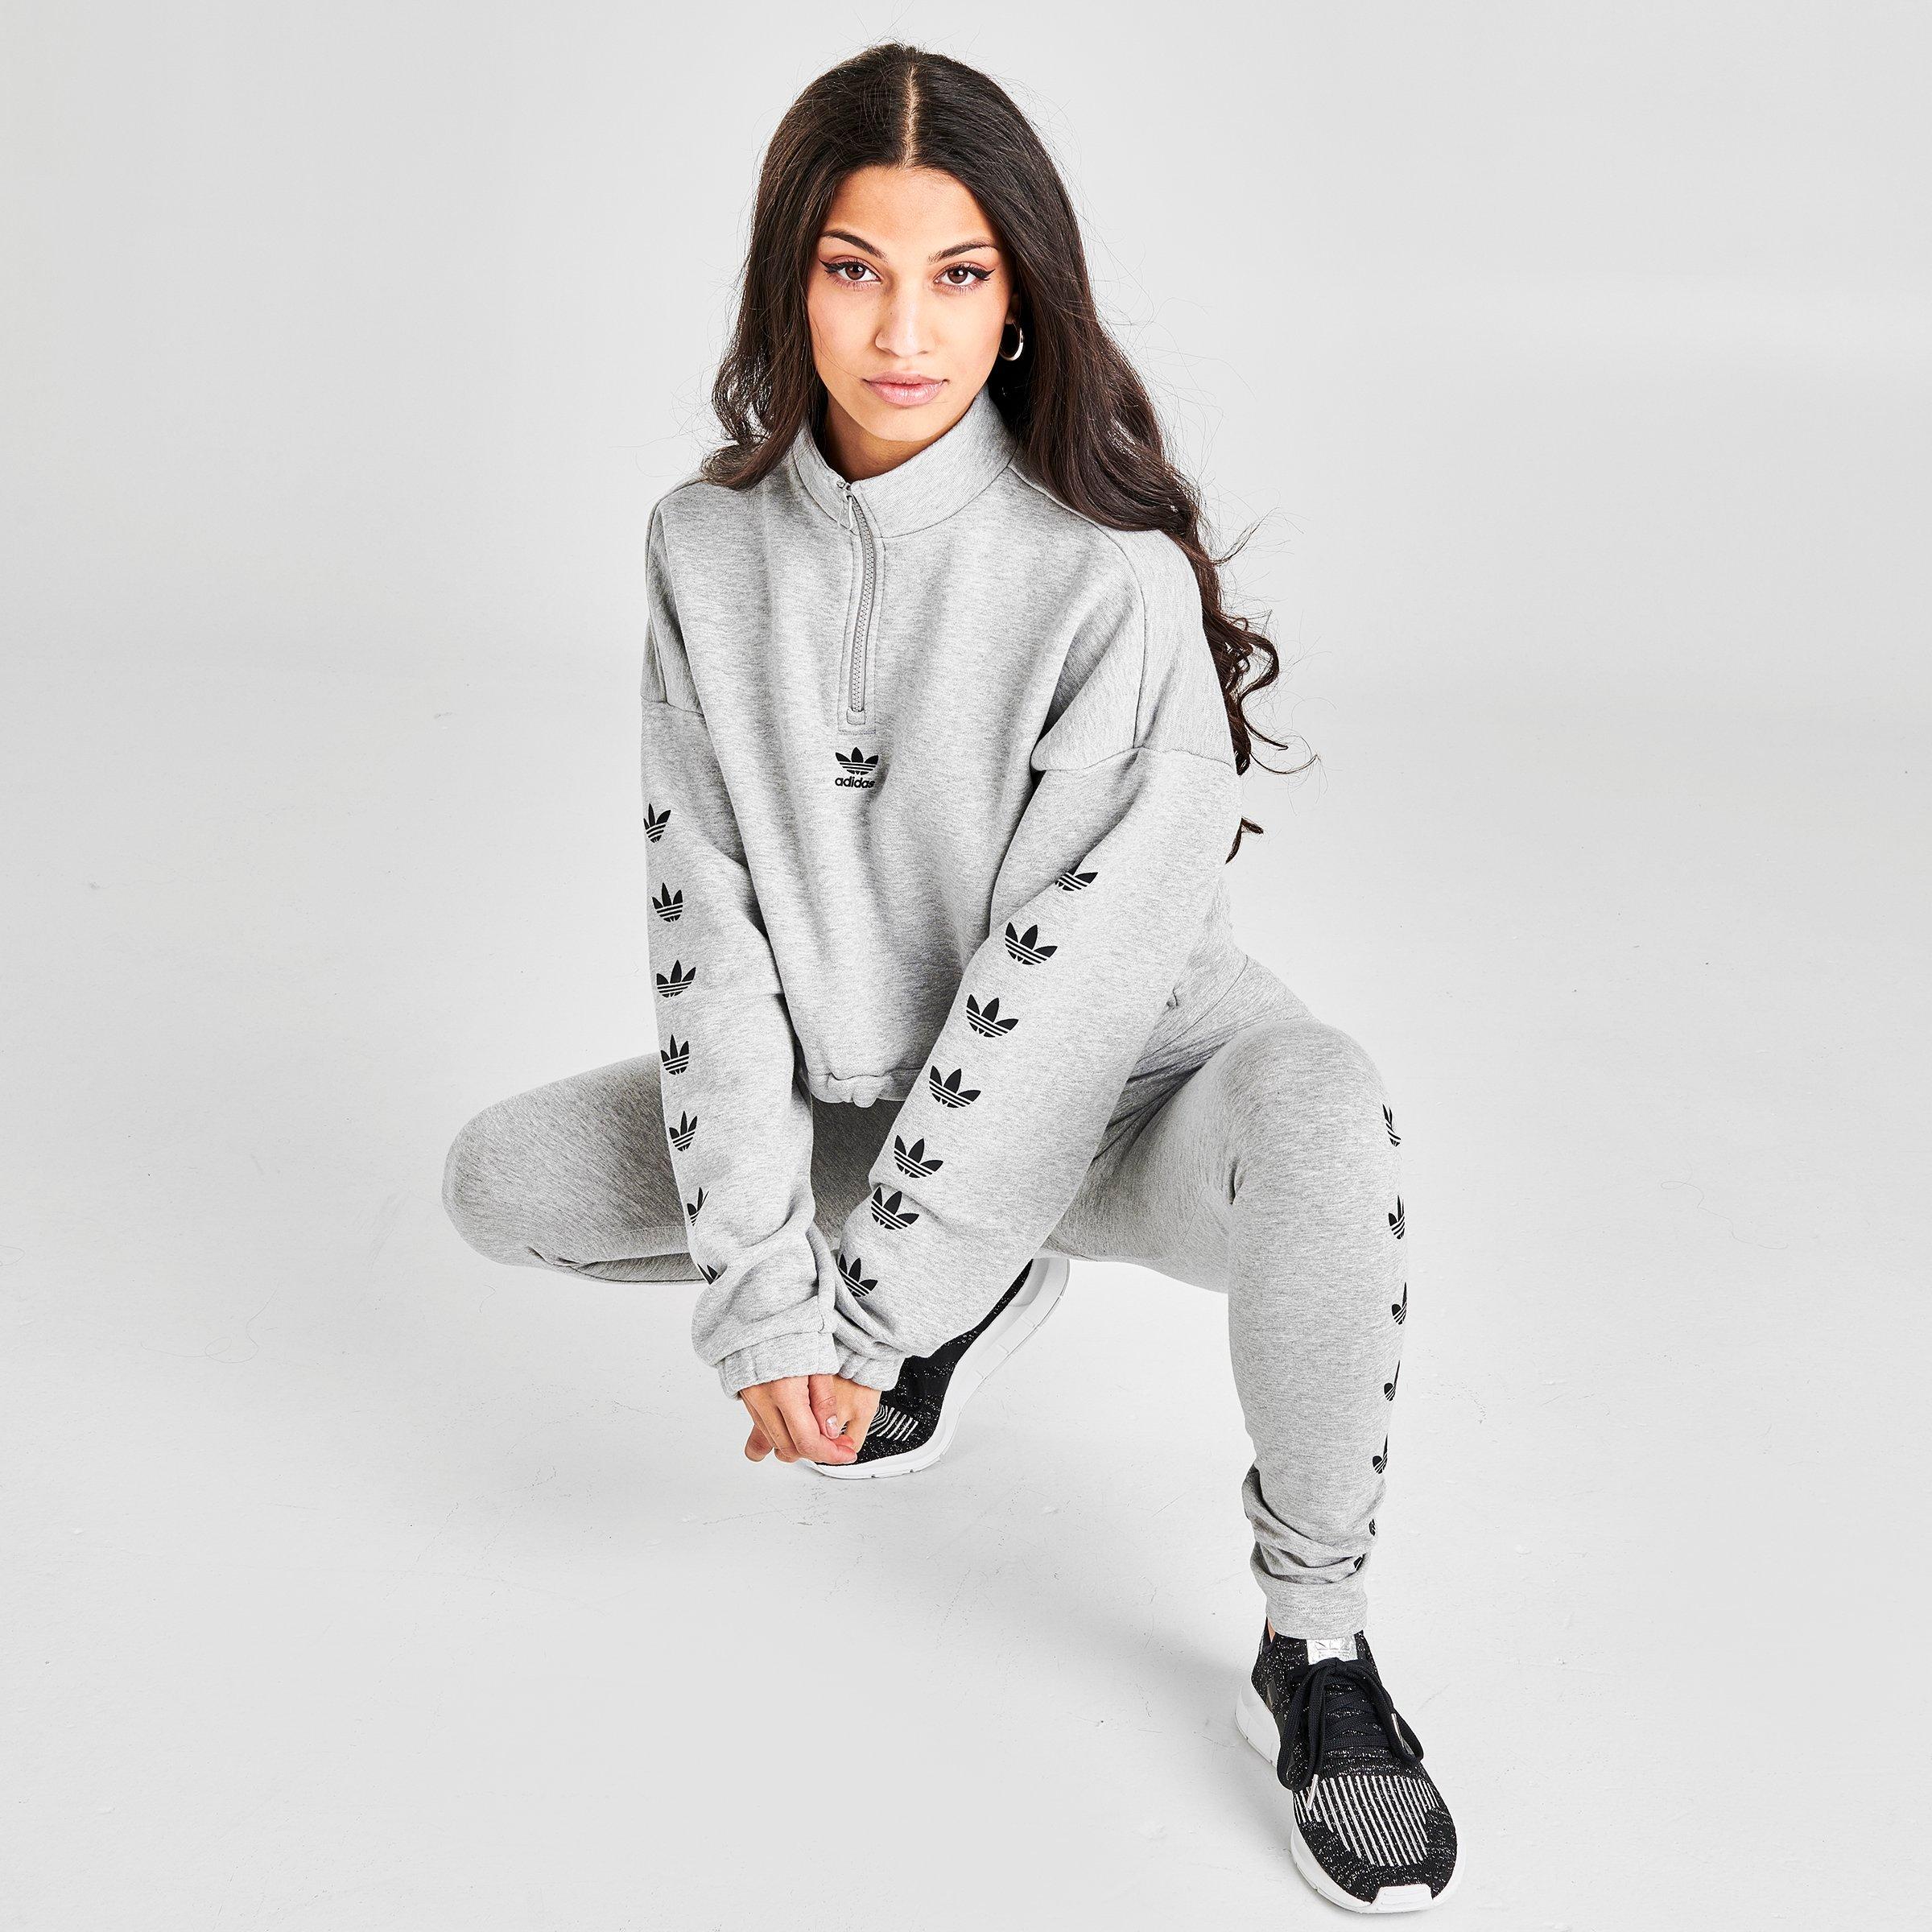 adidas cropped zip up hoodie